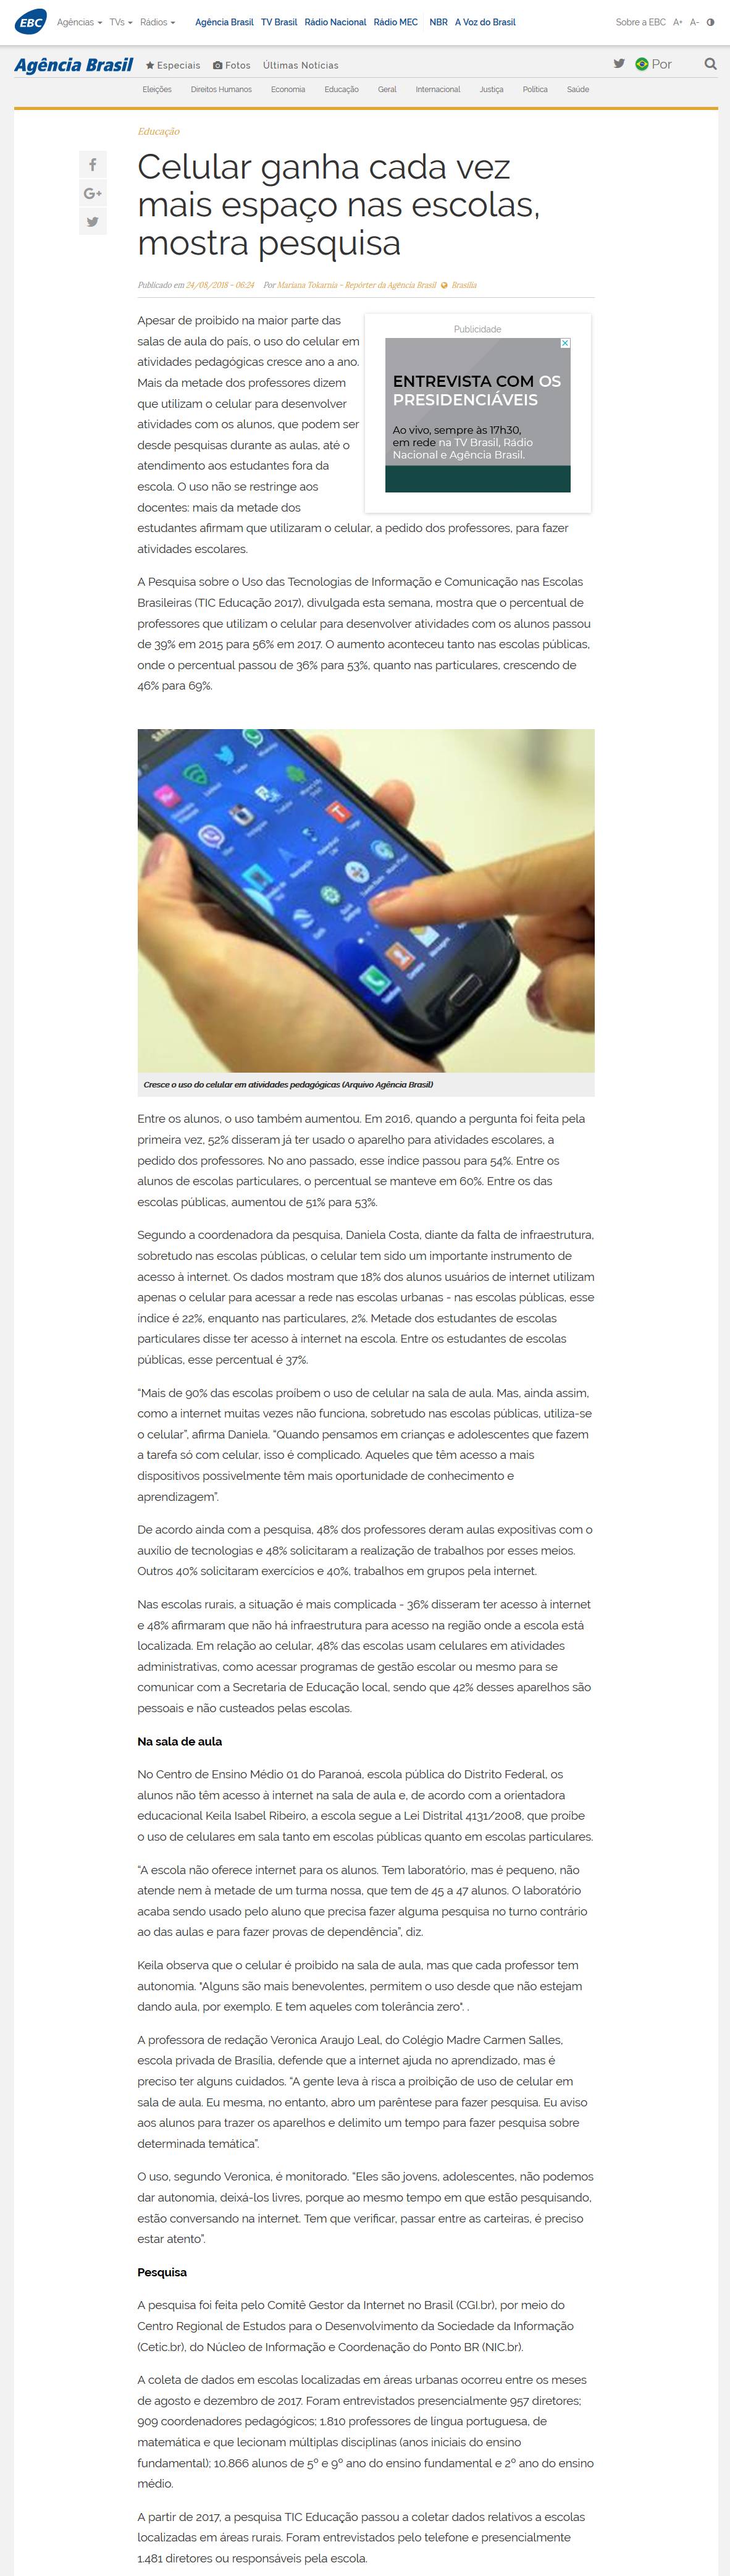 Uso de celular no Brasil